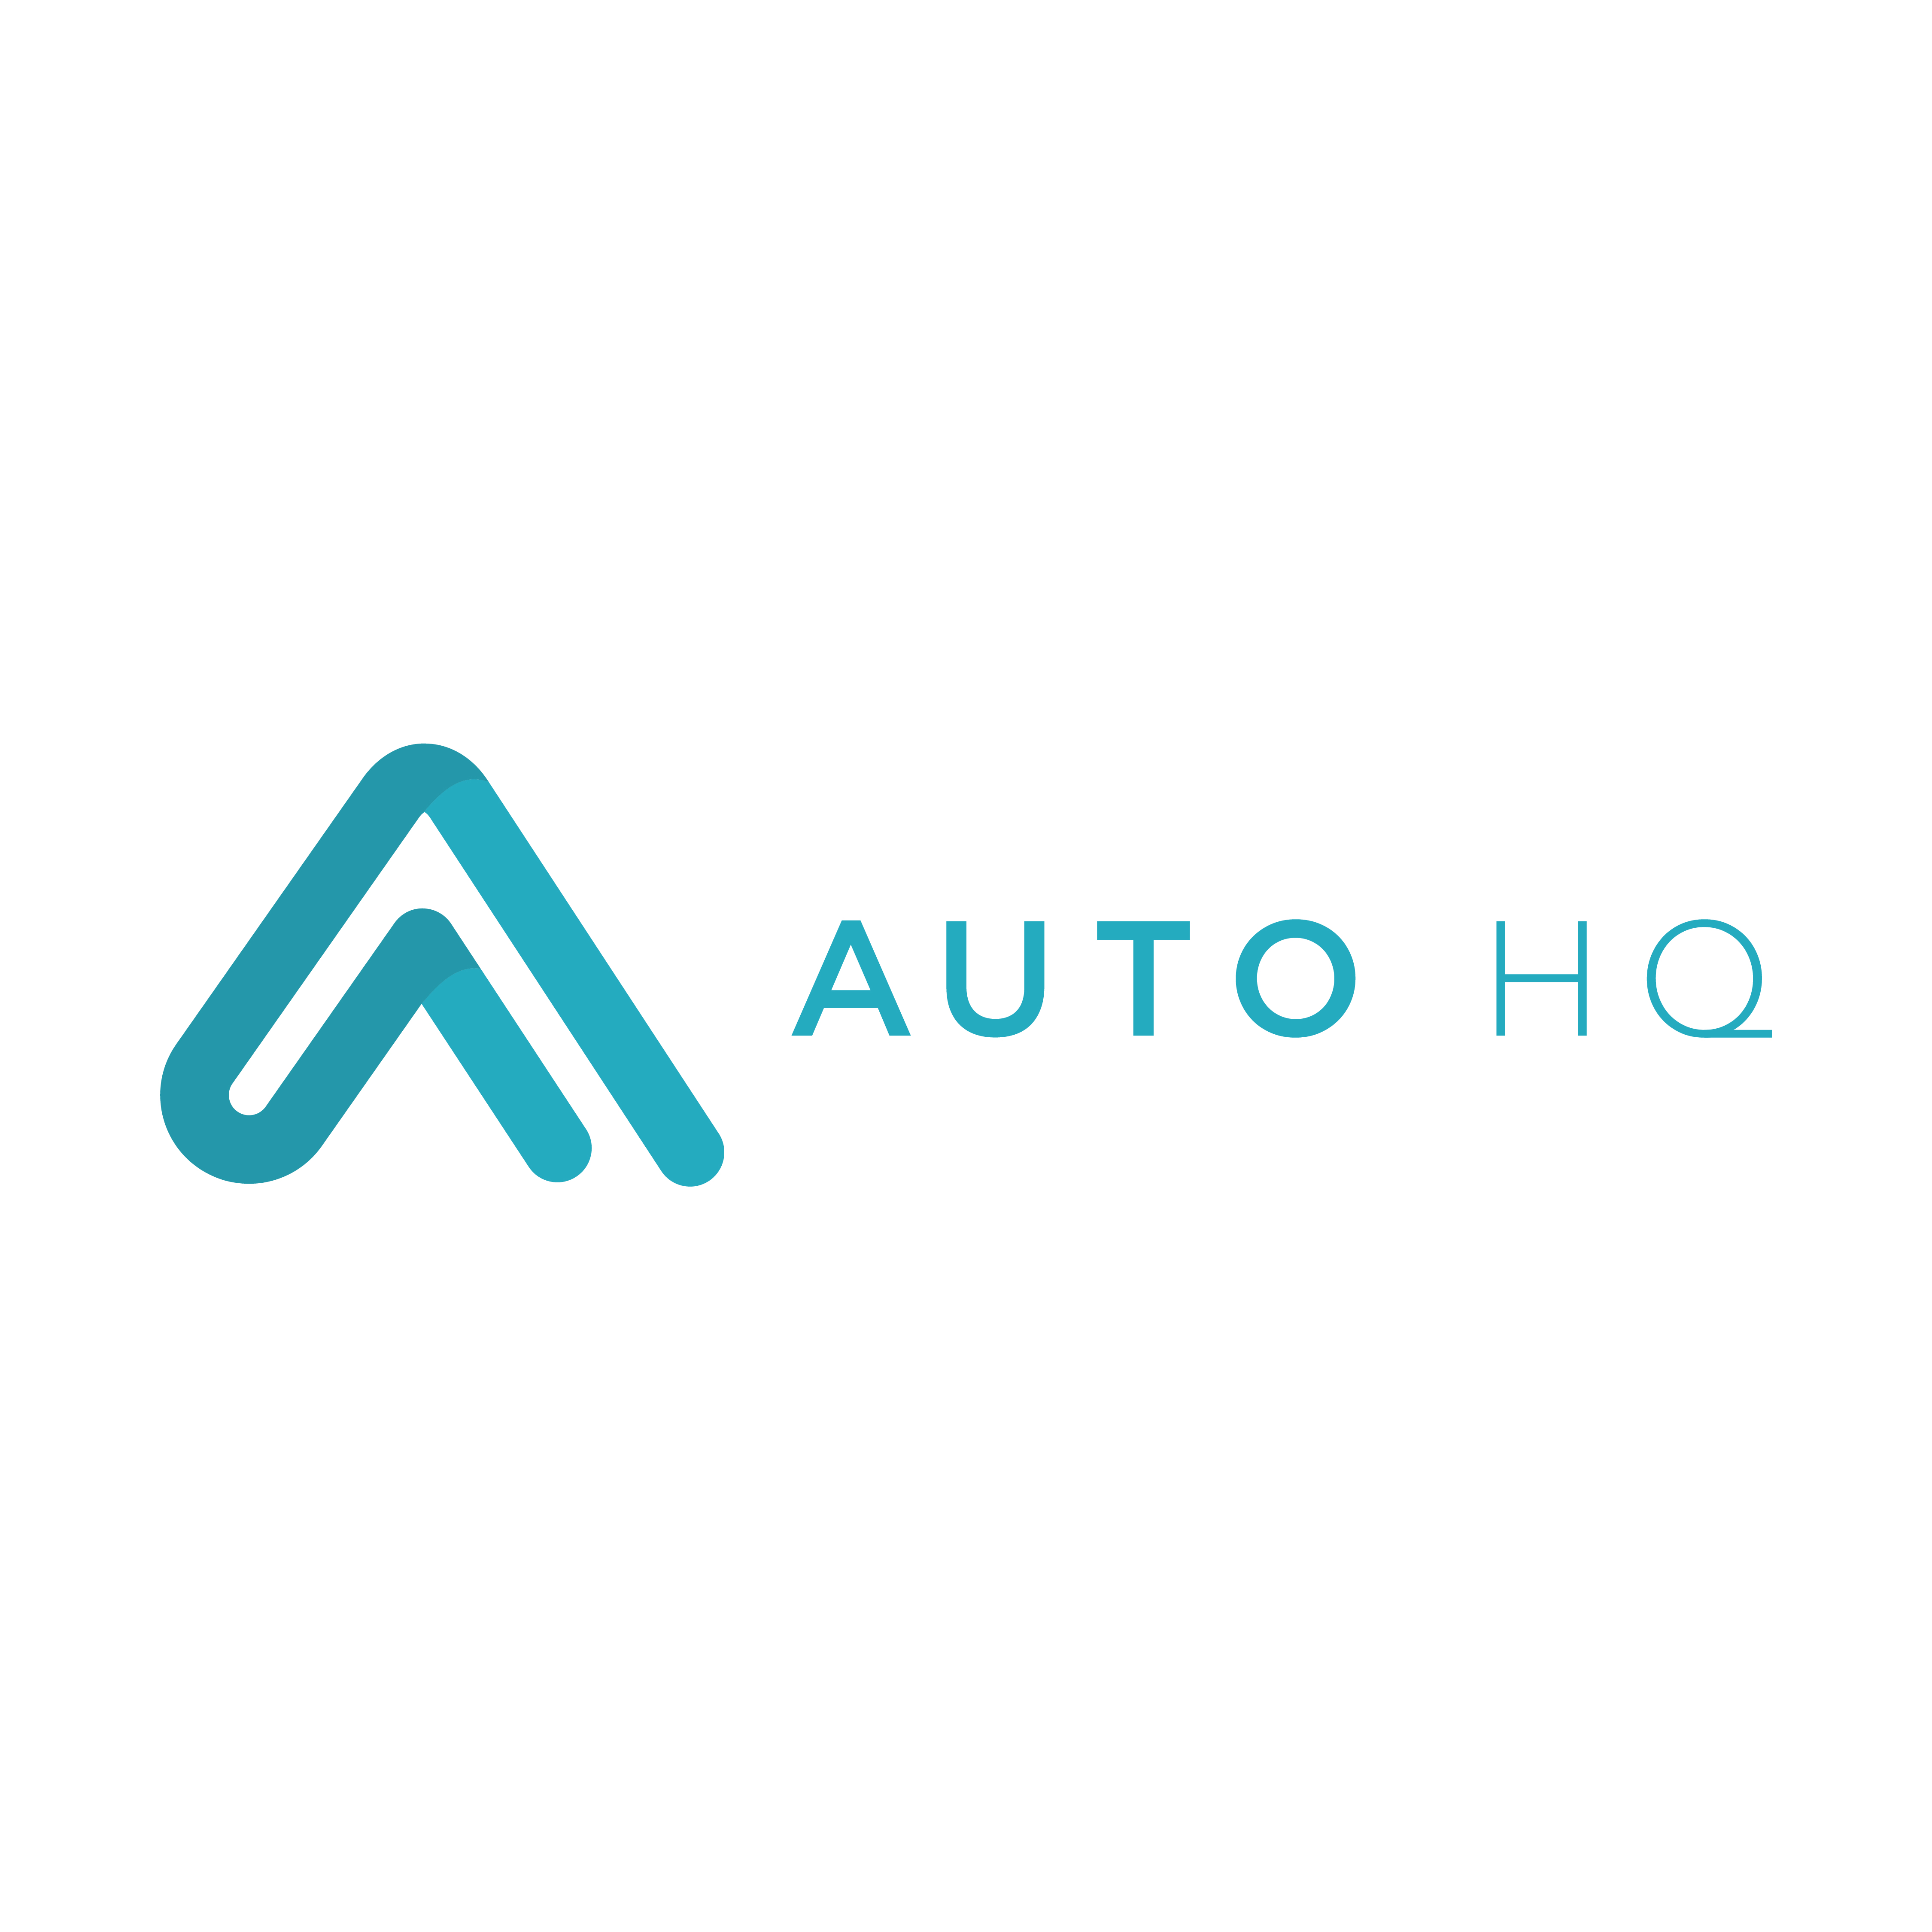 Auto HQ Media Ltd